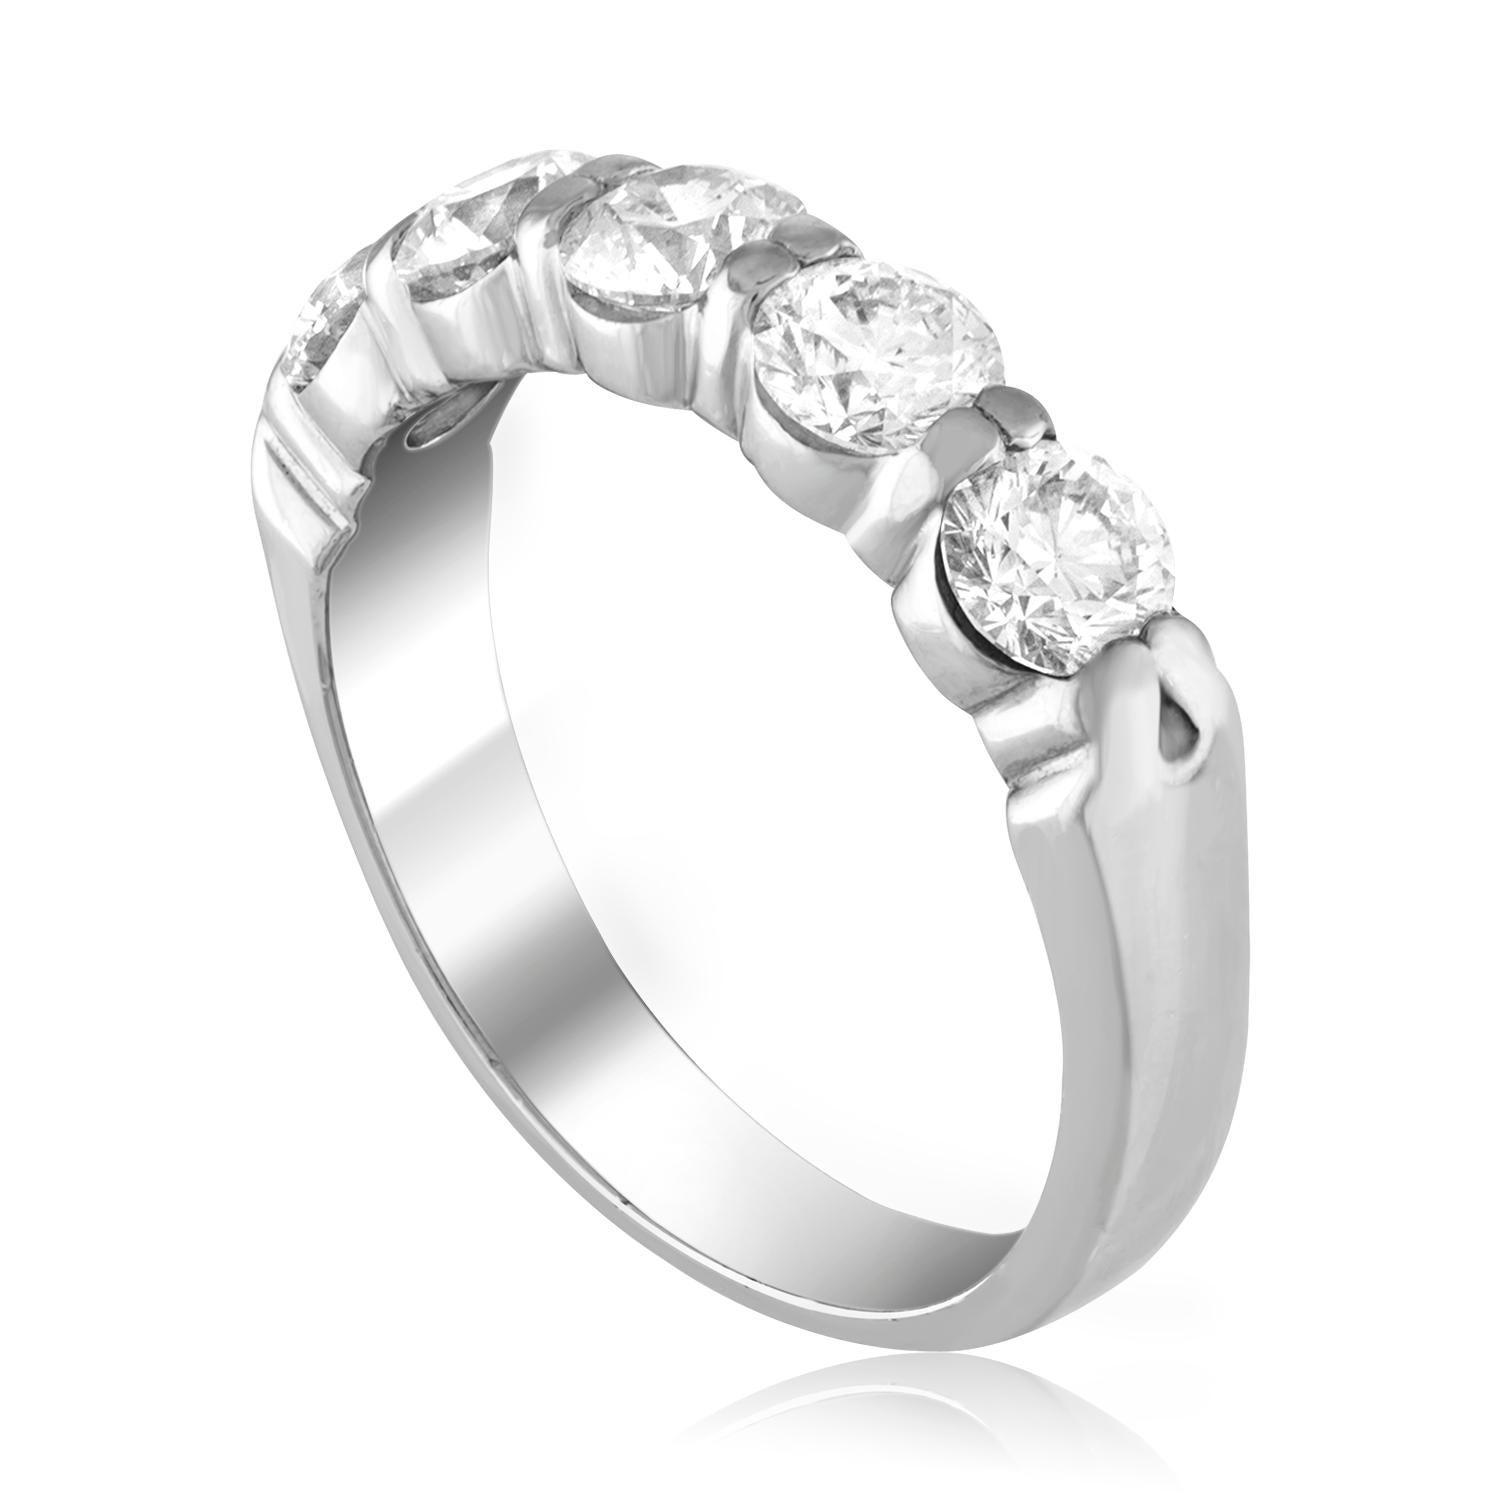 Sehr schöner Halbdiamantbandring
Der Ring ist aus Platin
Es sind 5 Diamanten mit Rundschliff in Zacken gesetzt
Es gibt 1,38 Karat in Diamanten F VS
Der Ring ist eine Größe 6, sizable. 
Das Band ist 4,25 mm breit und verjüngt sich auf 3,34 mm.
Der